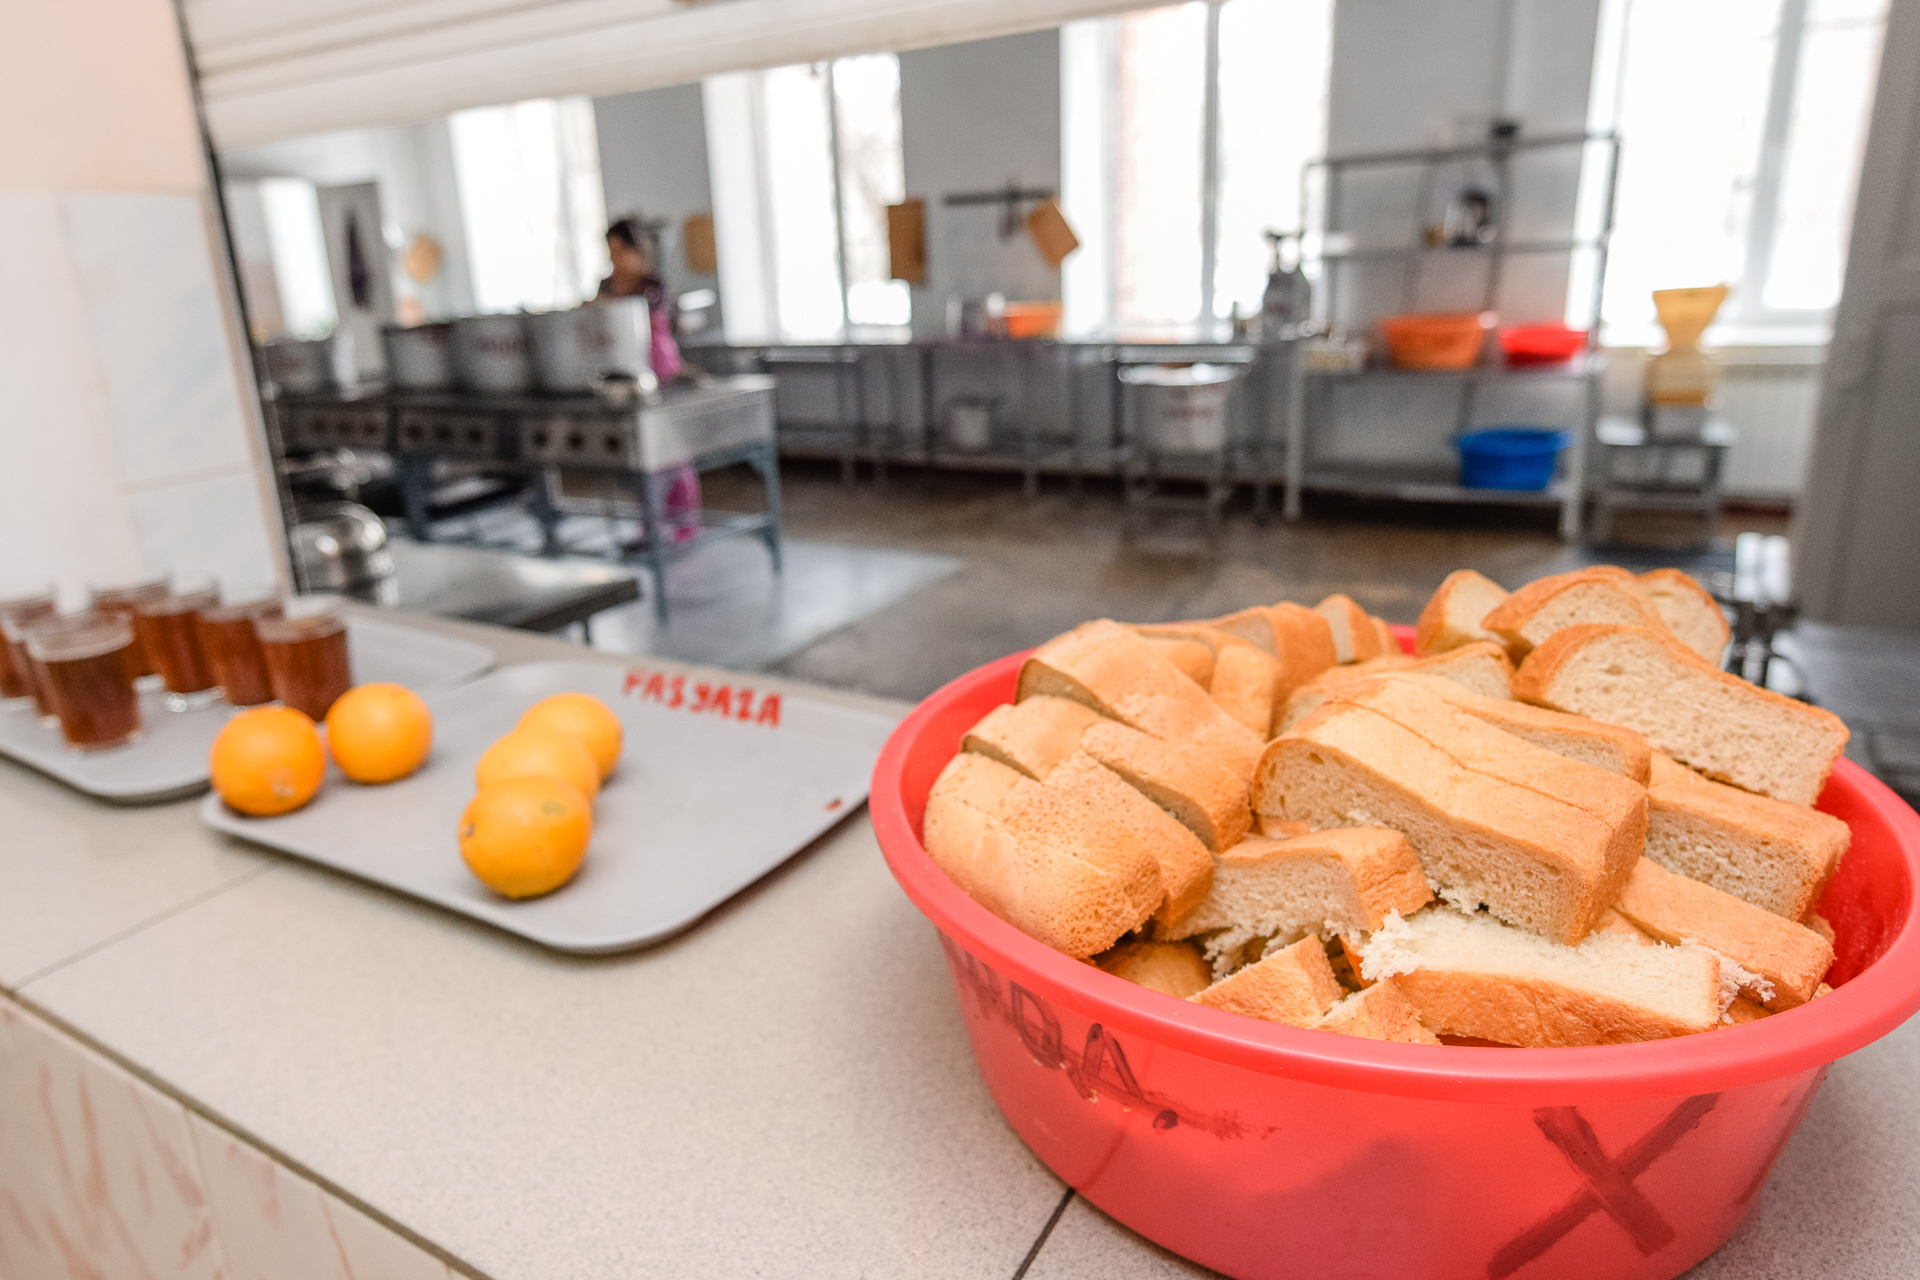 Только 60% омских школьников питаются в столовых - мэрия